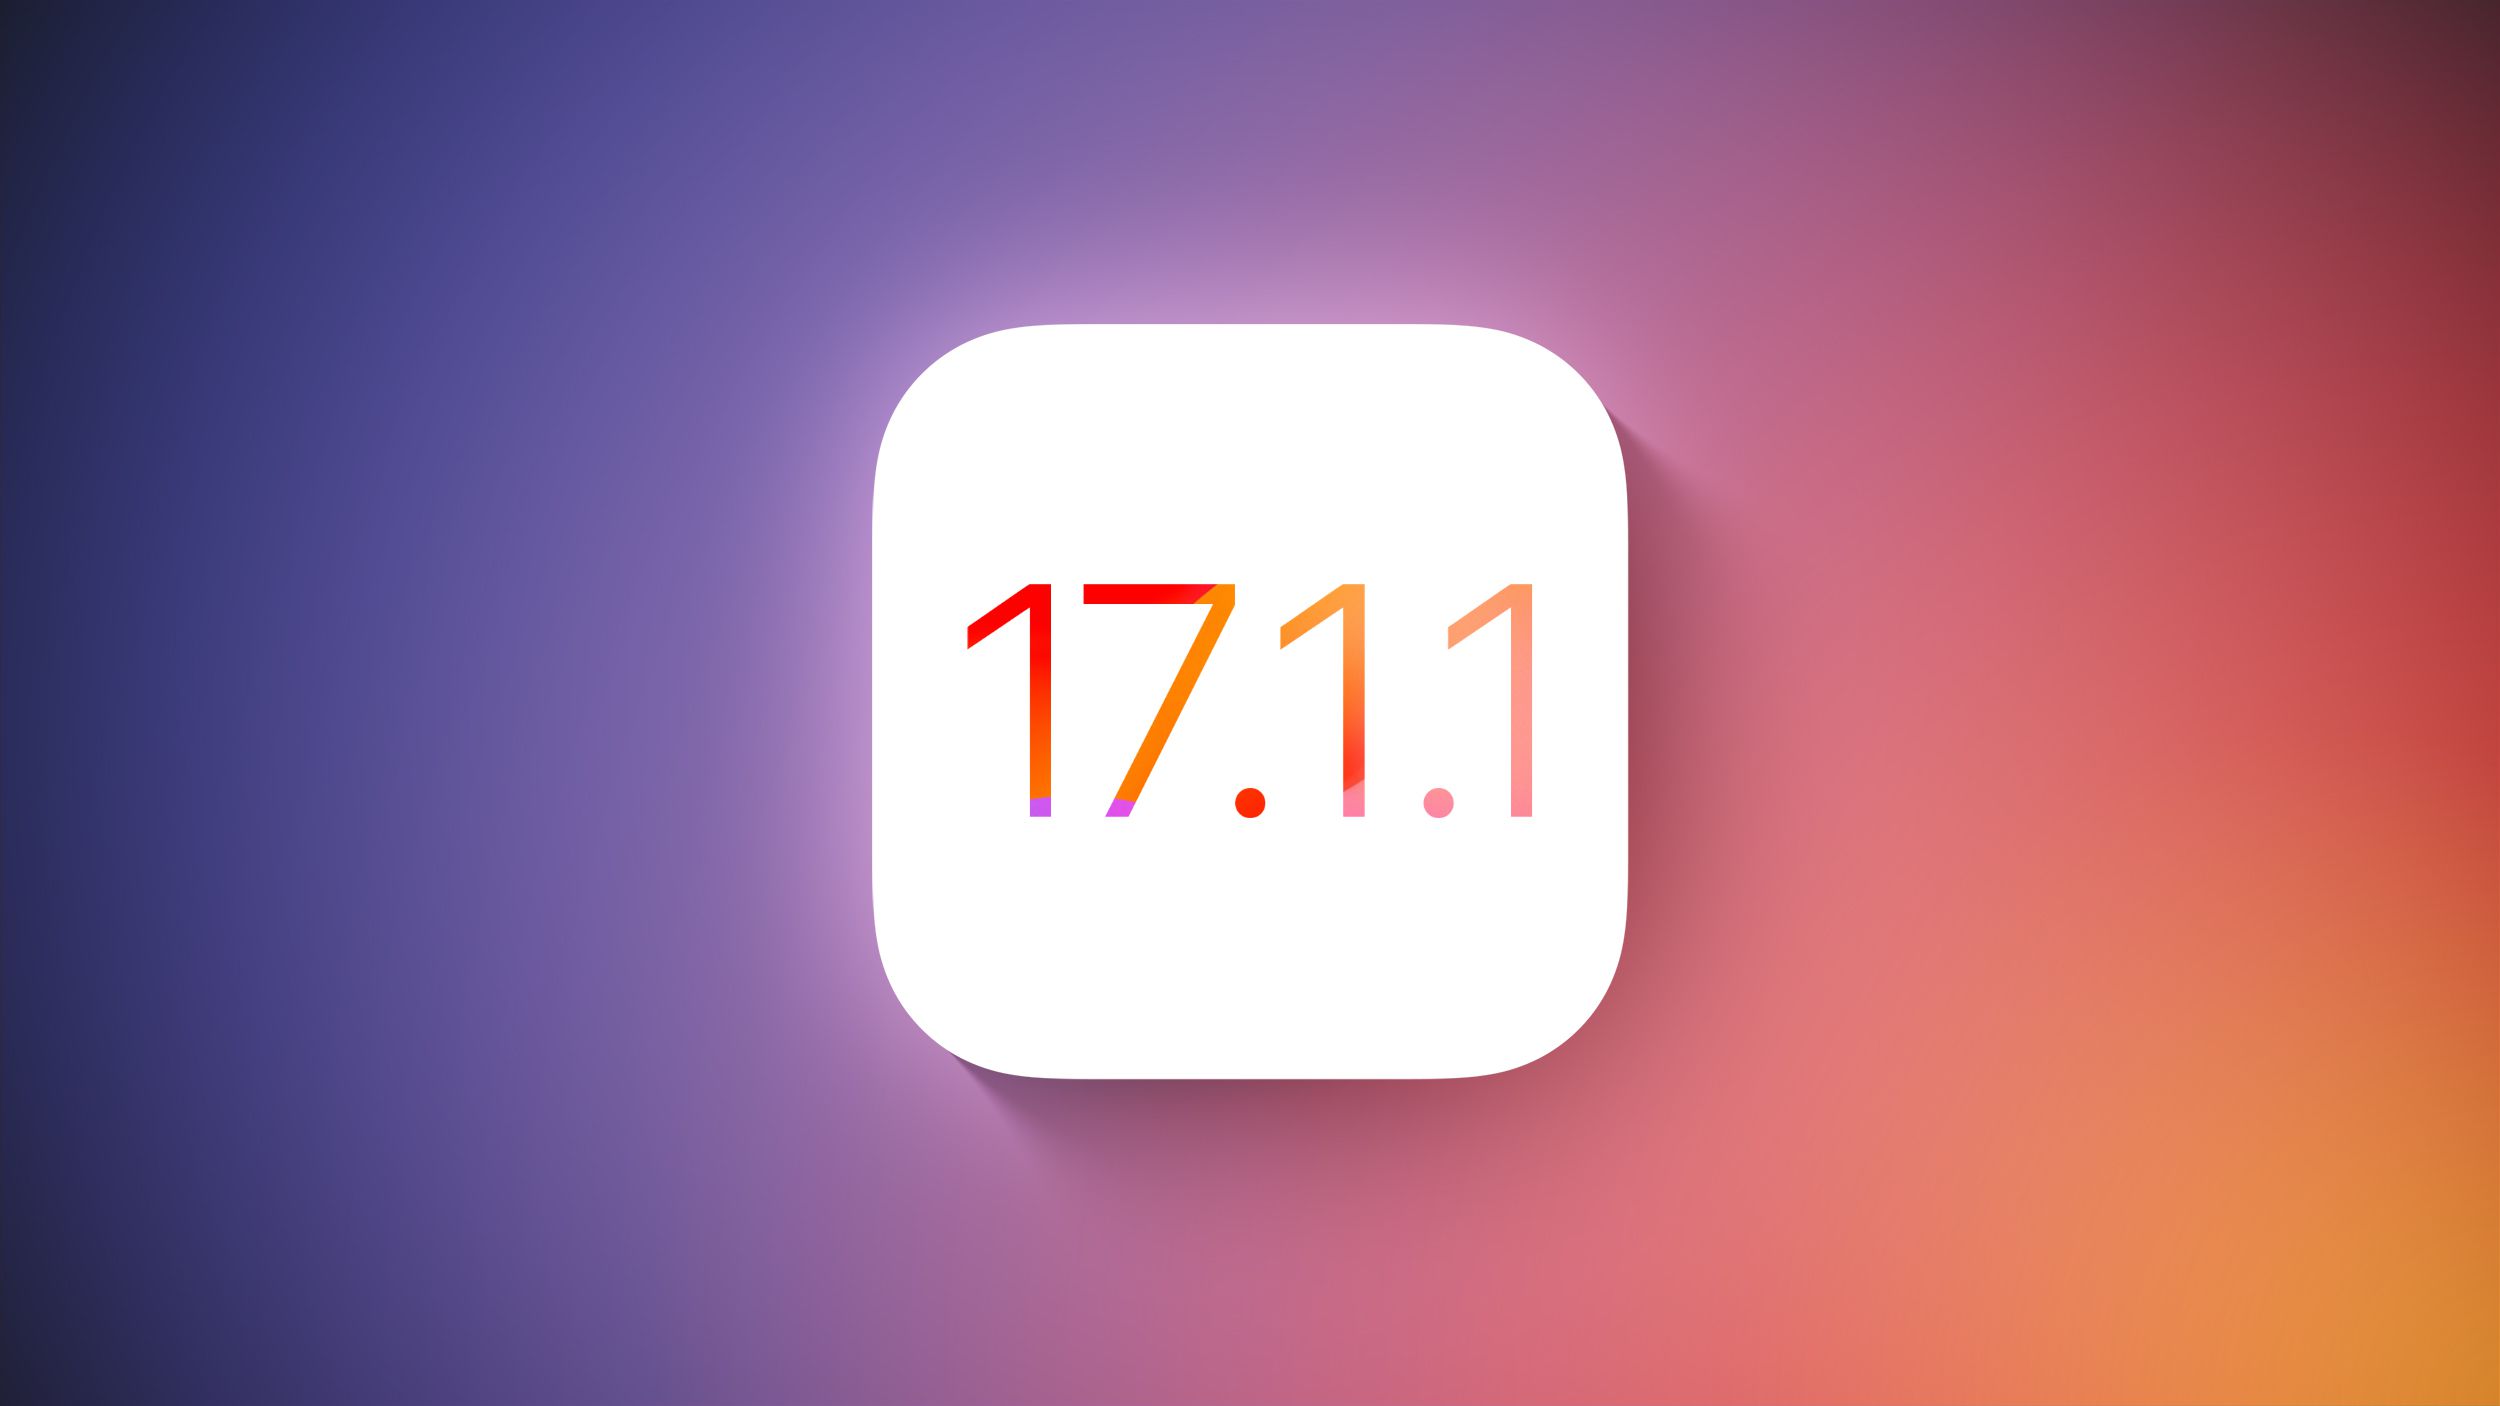 اپل iOS 17.1.1 را با رفع اشکال برای شارژ بی سیم BMW و ویجت آب و هوا منتشر کرد